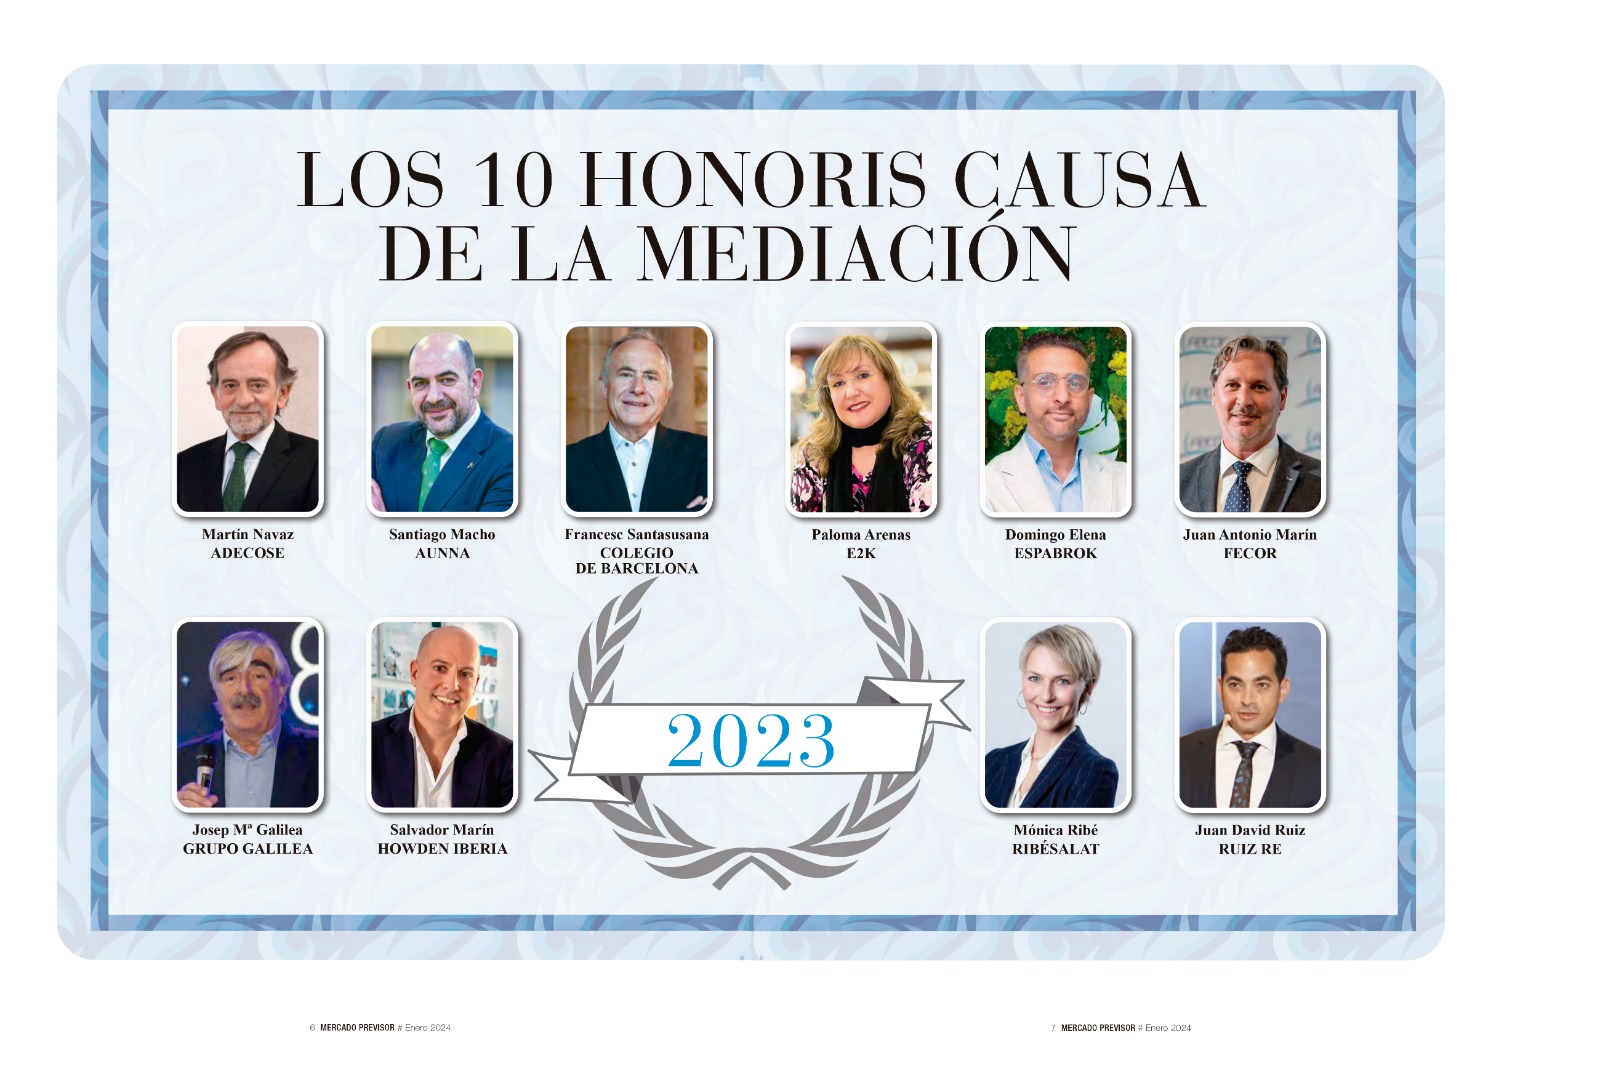 Josep Mª Galilea, uno de los 10 "honoris causa" de la medicación de seguros en 2023 1